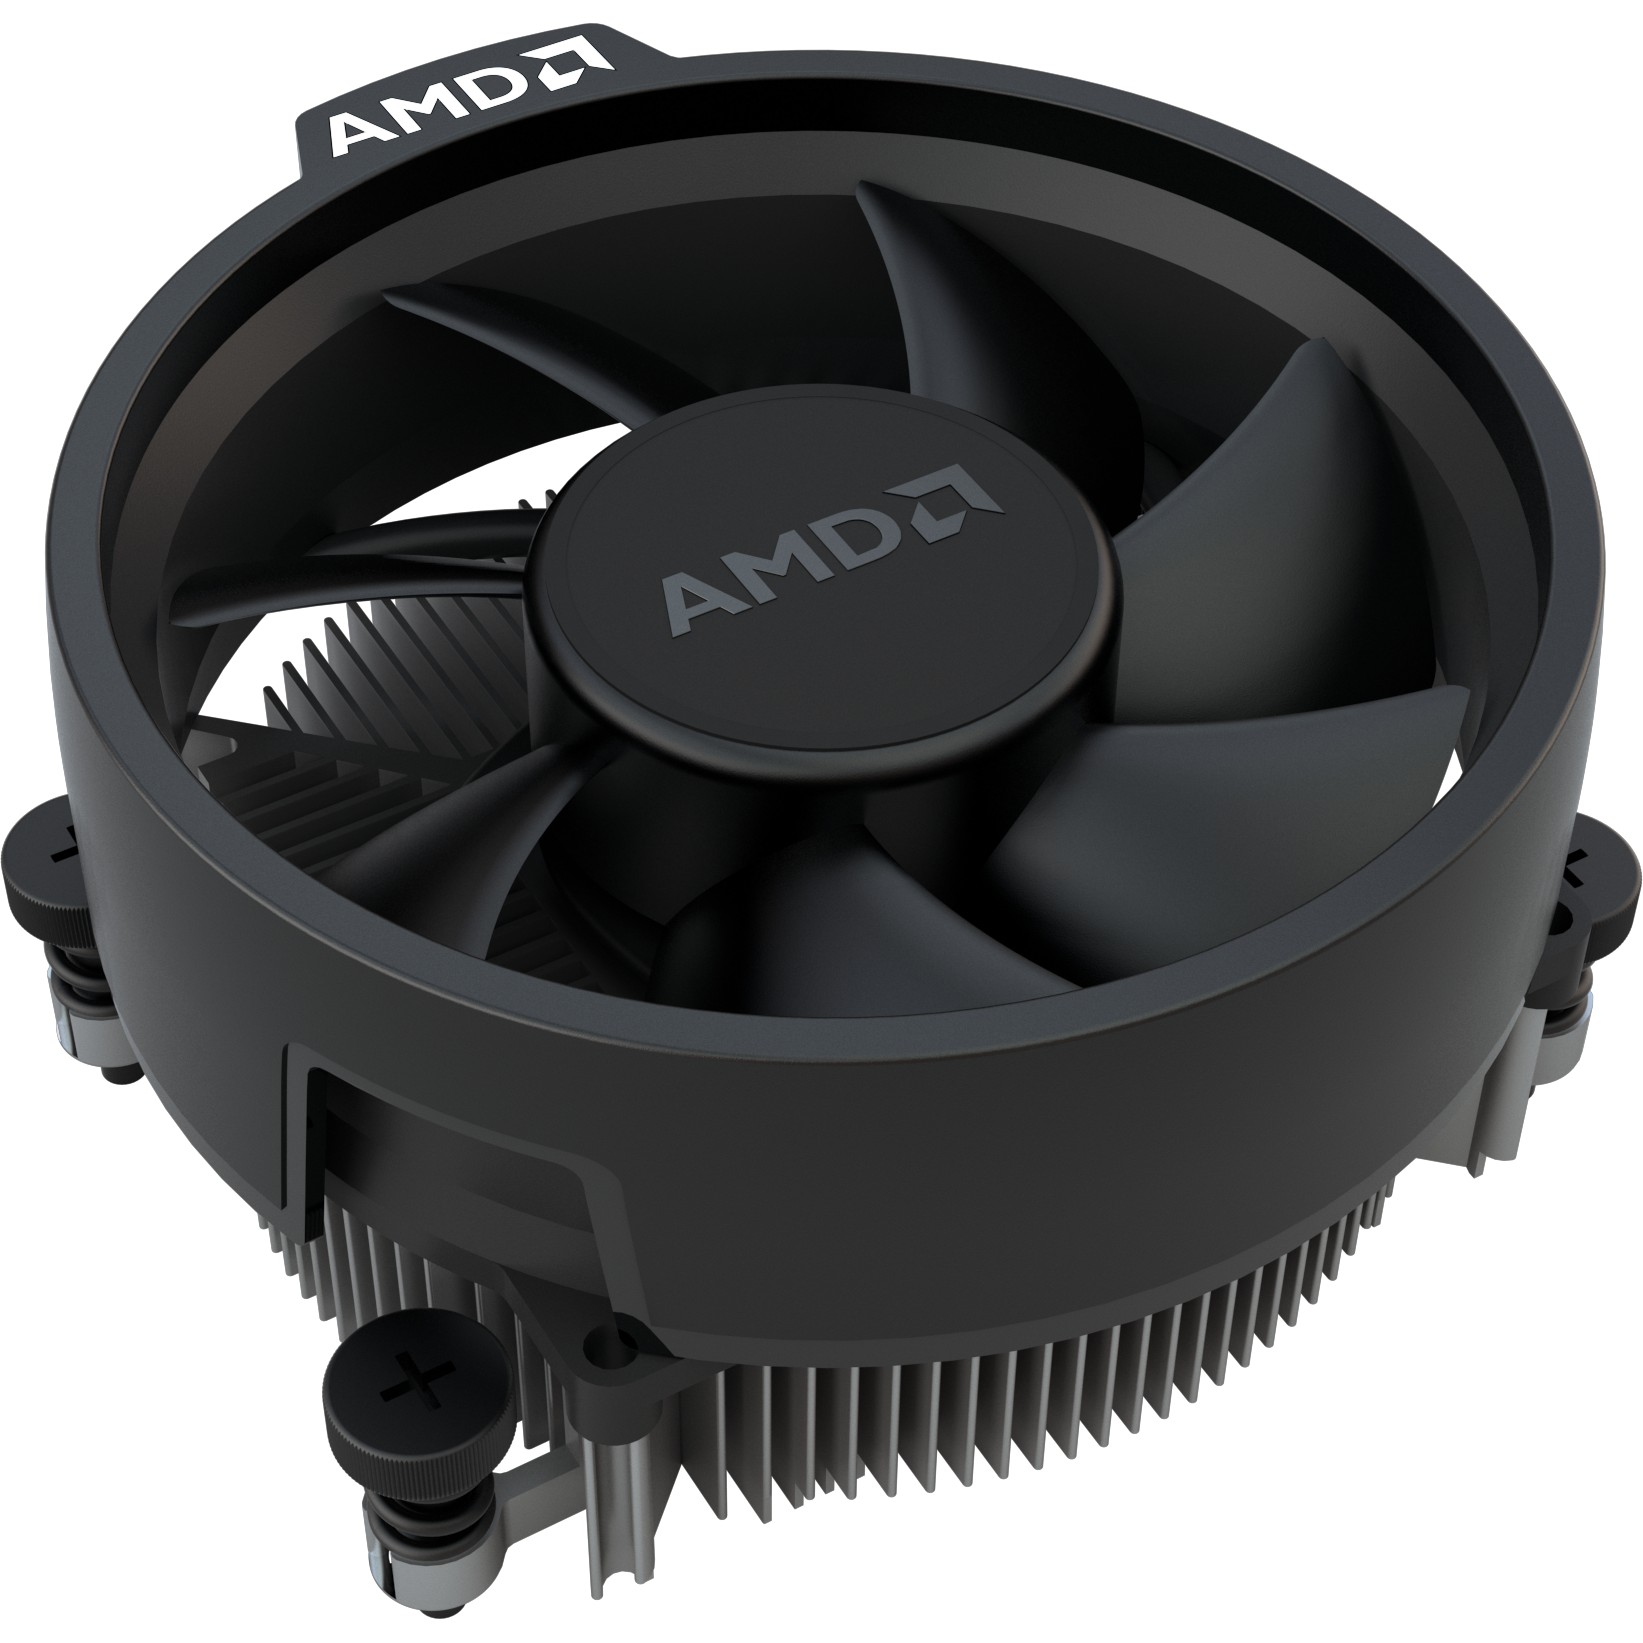 AMD YD3200C5FHBOX, AMD CPUs, AMD Ryzen 3 3200G processor  (BILD5)